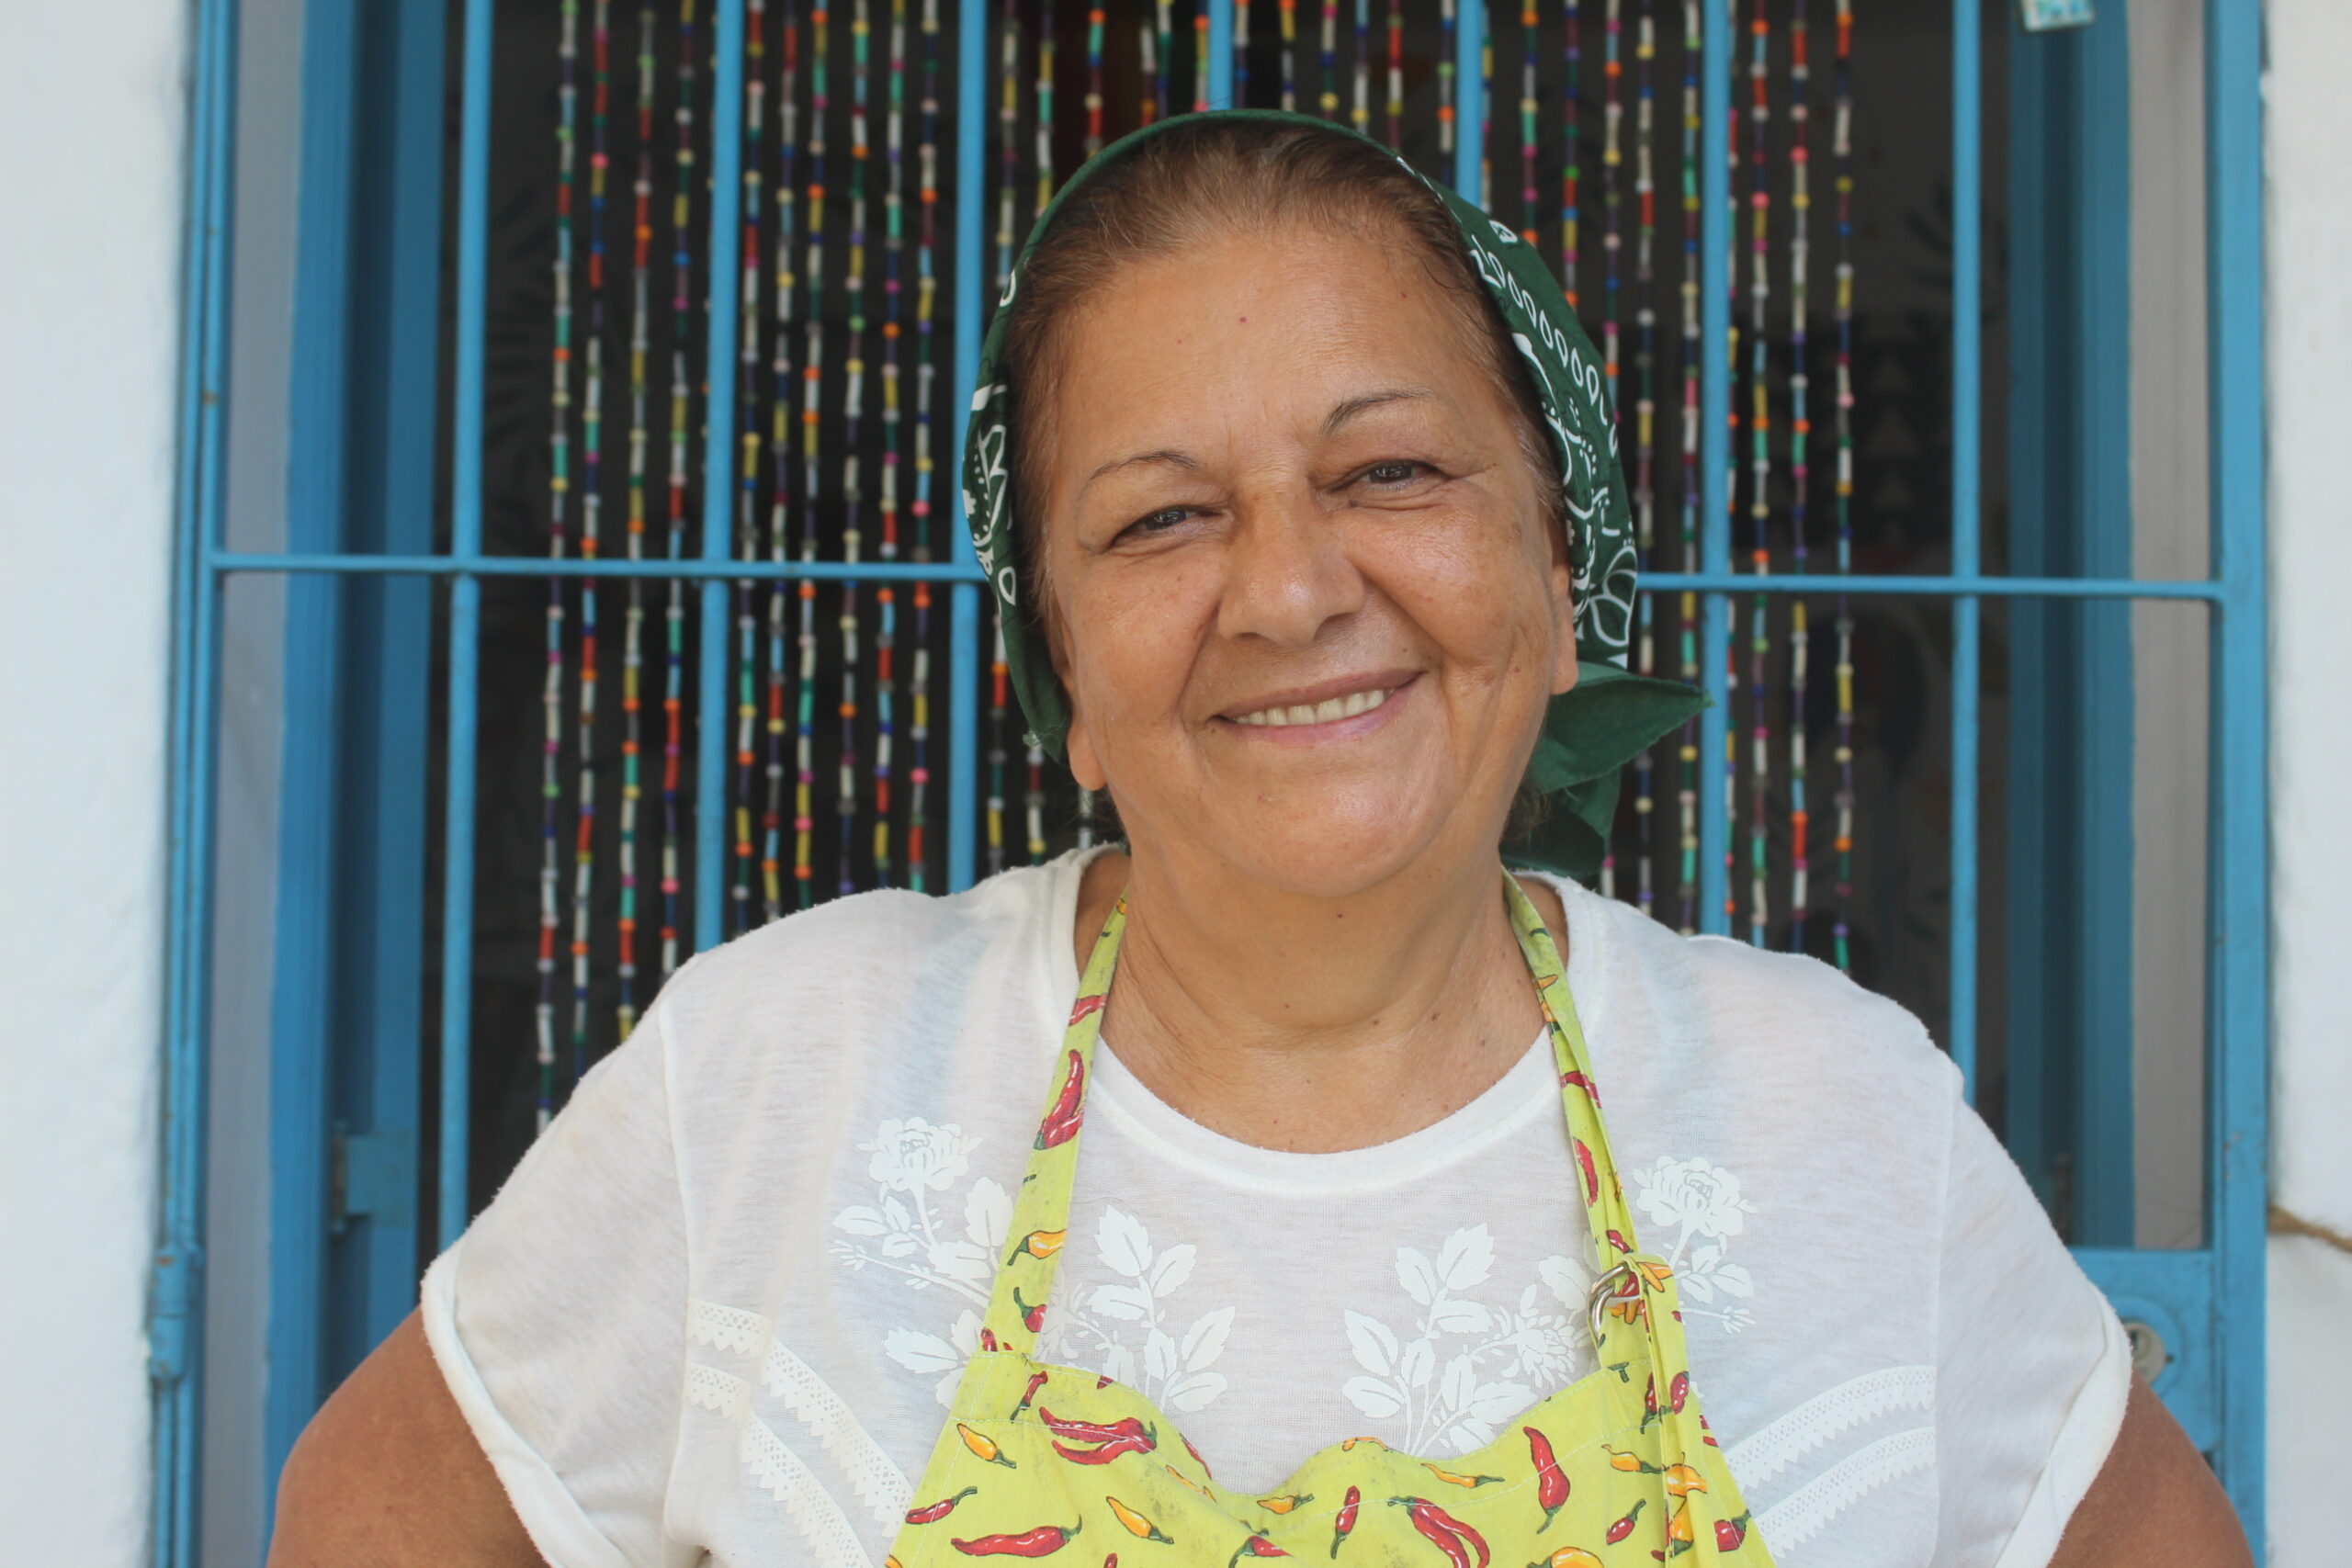 Viajando sozinha aos 66 anos, brasileira faz voluntariado para conhecer novos destinos